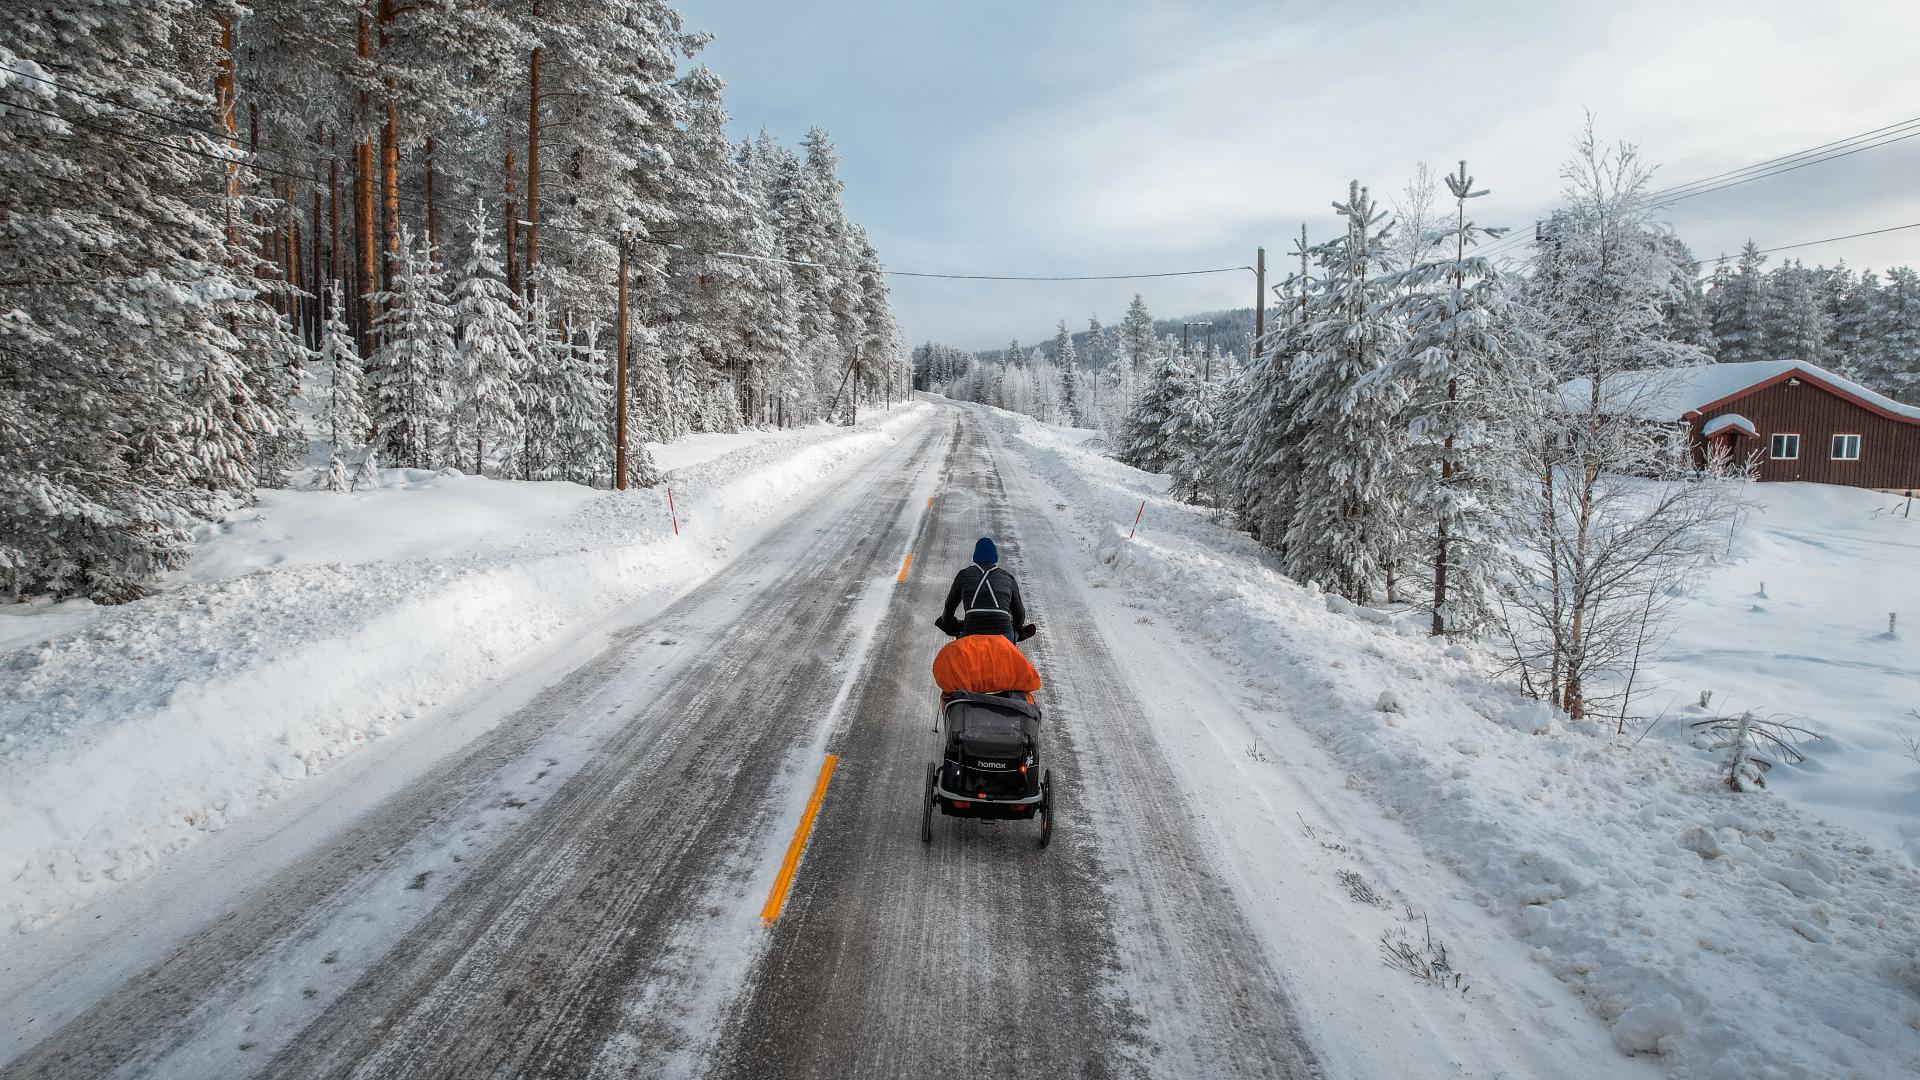 Like - "S dva psa vozim bicikl 2300 kilometara kroz ledenu Norvešku, a vučem i opremu tešku 113 kg"